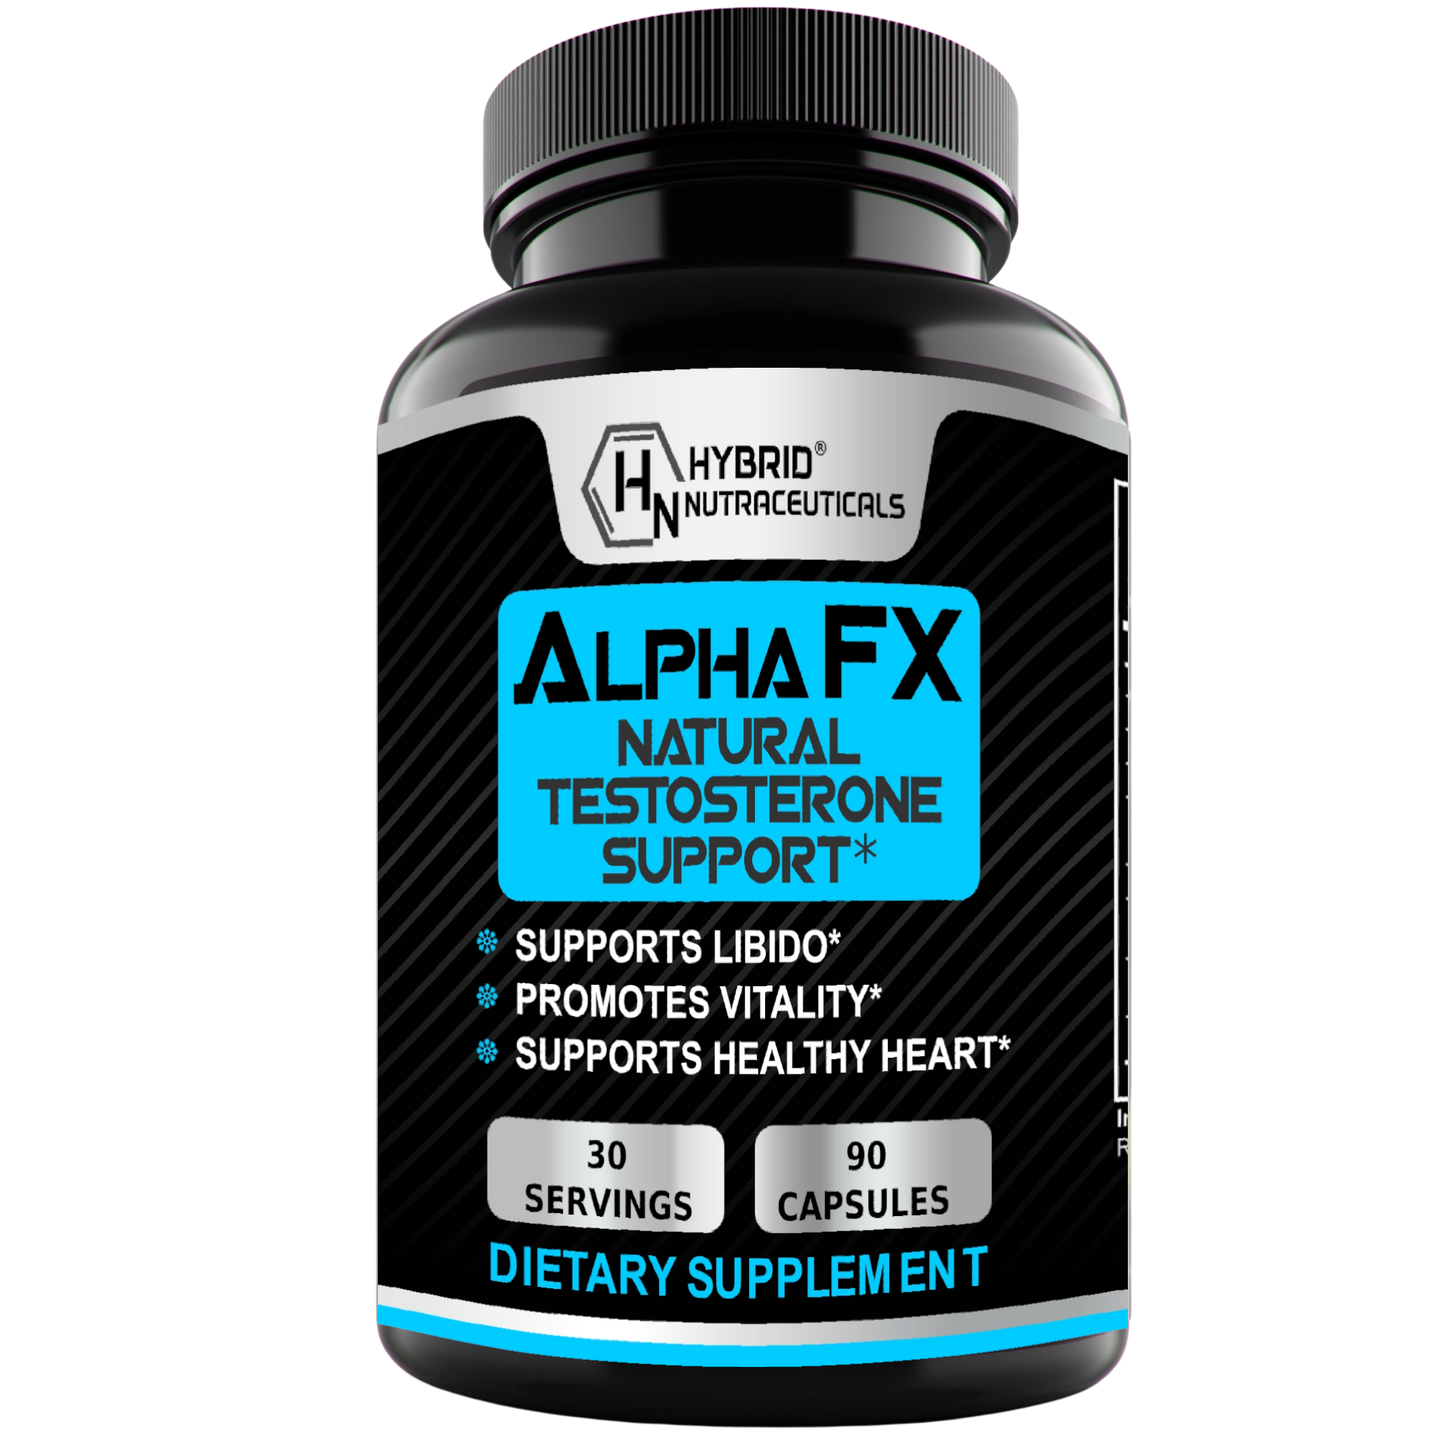 AlphaFX Natural Test Booster Estrogen Blocker